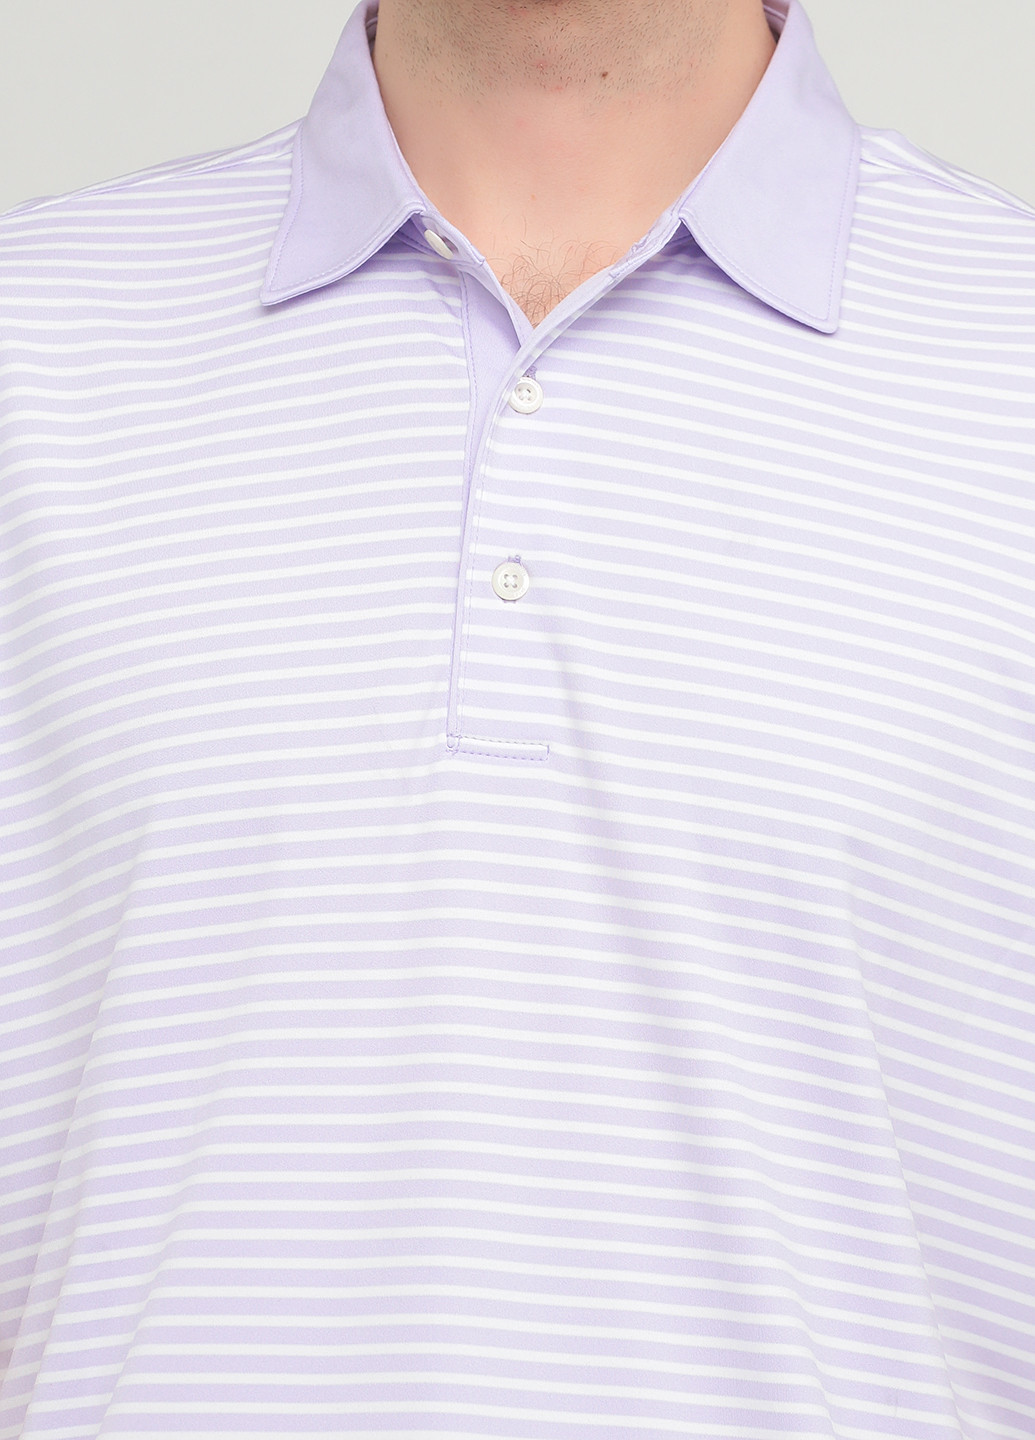 Сиреневая футболка-поло для мужчин Greg Norman в полоску